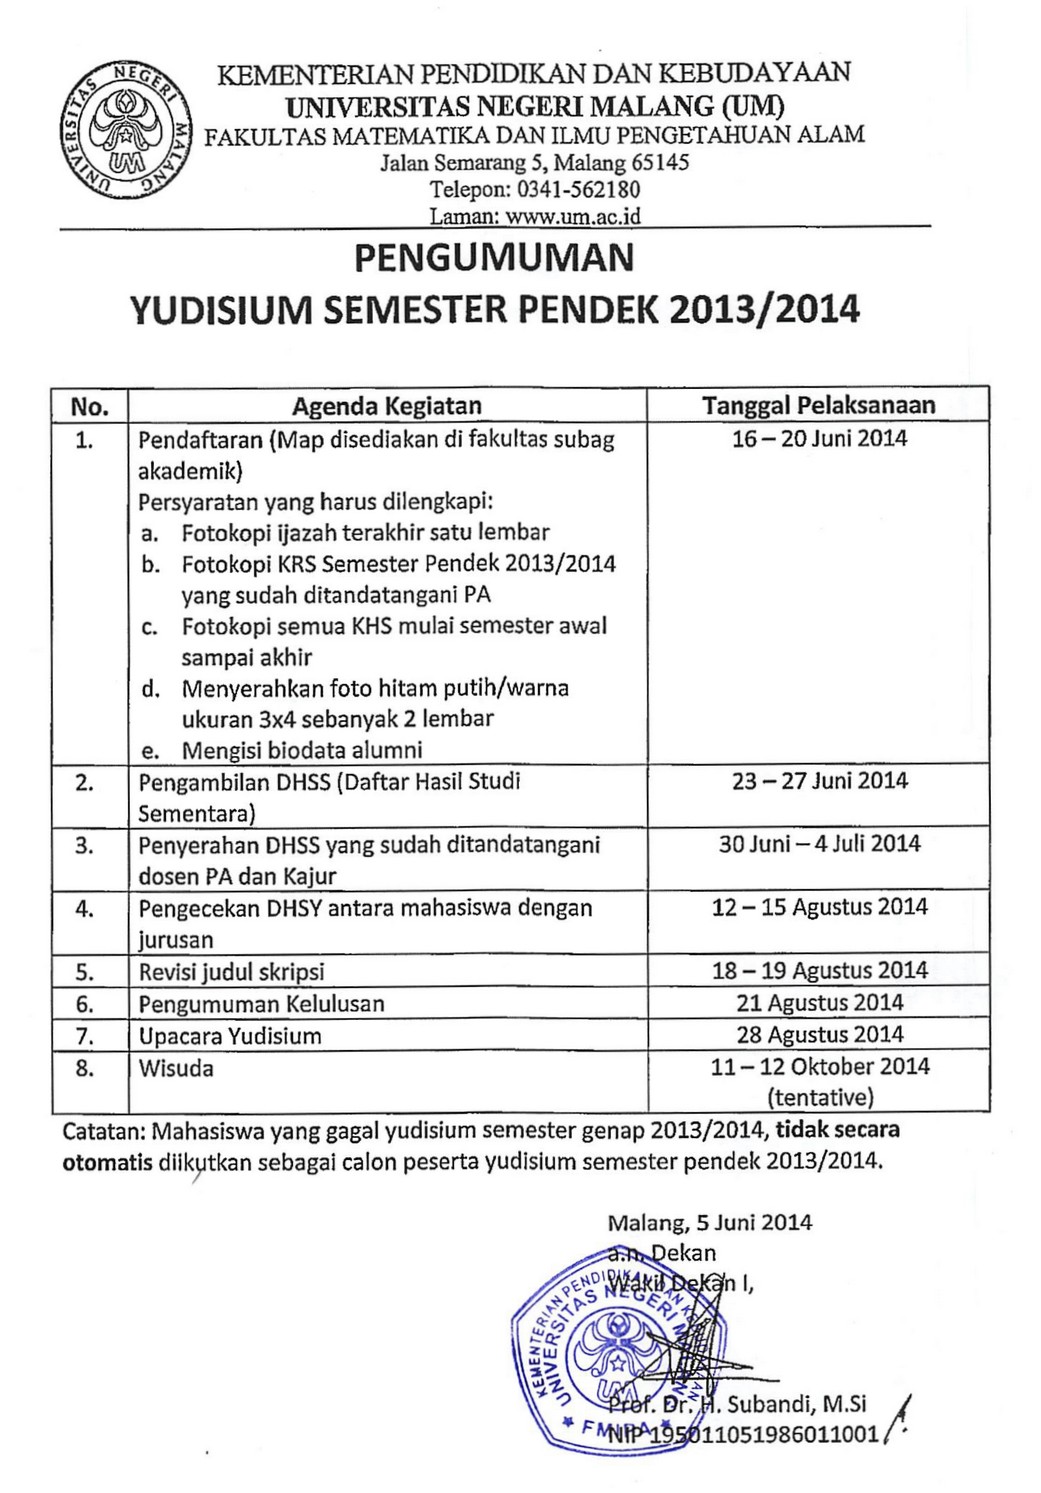 Pengumuman Yudisium SP 2013-2014 edit